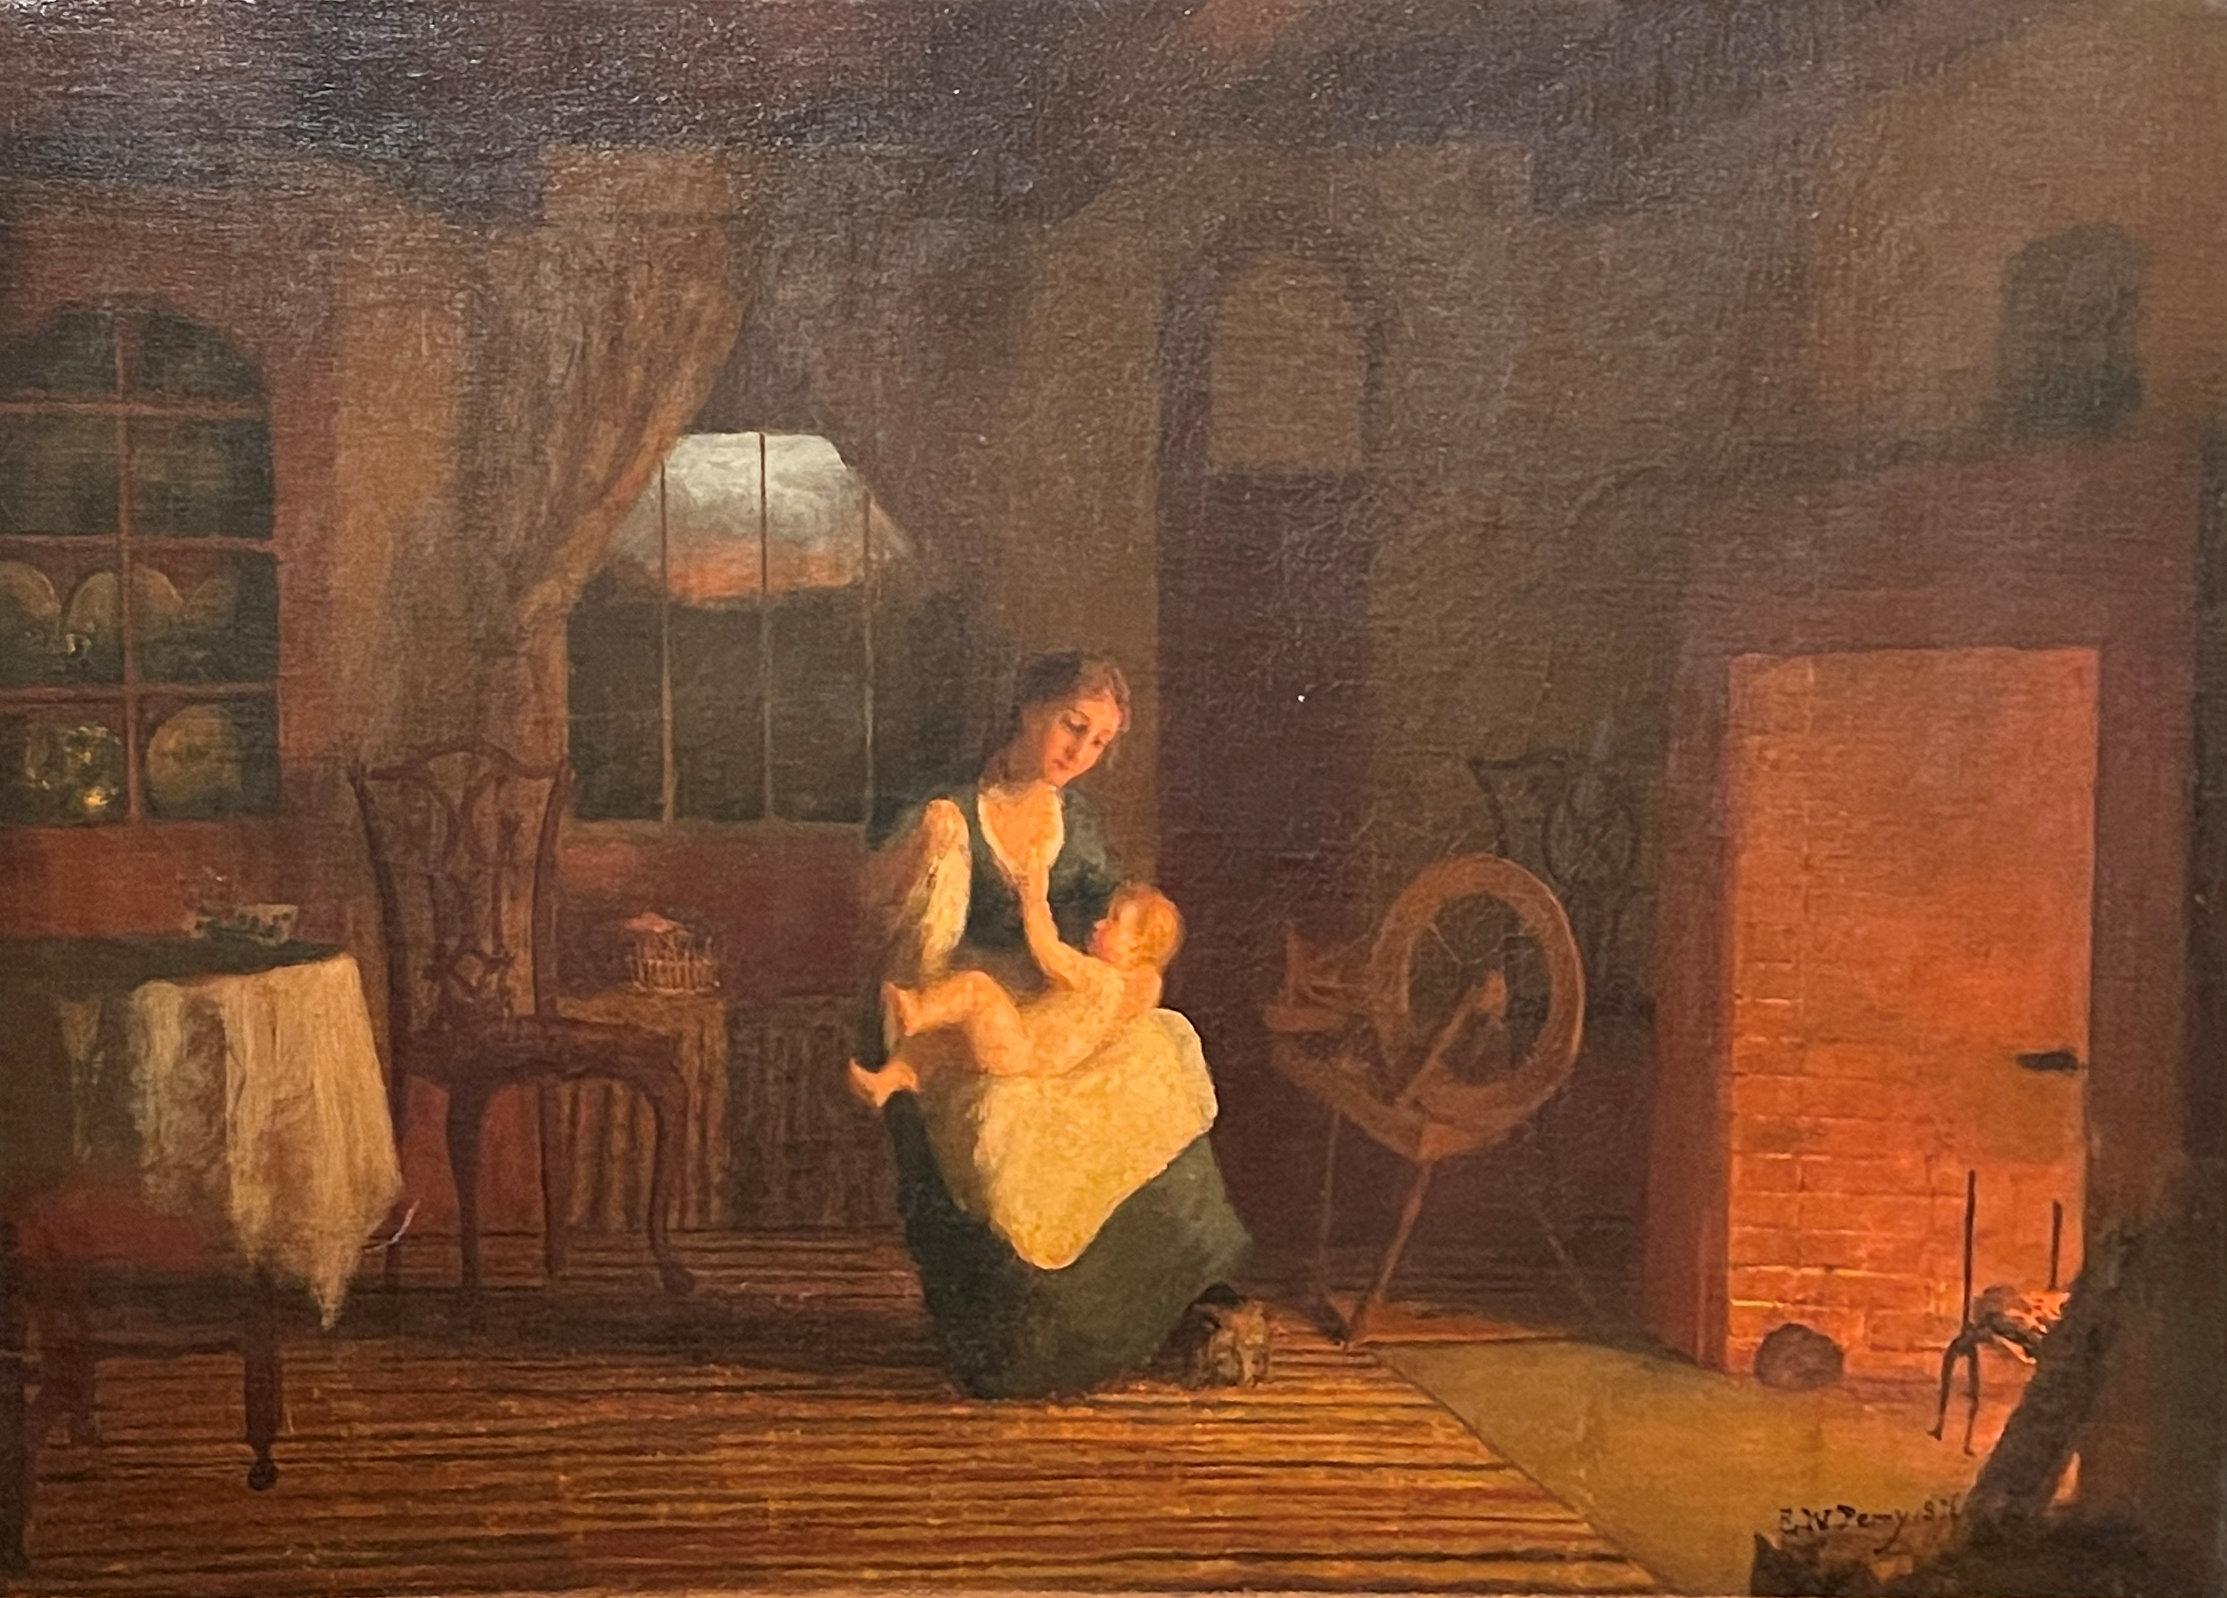 Interior Painting Enoch Wood Perry Jr. - « A Quiet Afternoon », Enoch Wood Perry, Scène de genre Mère et enfant au foyer